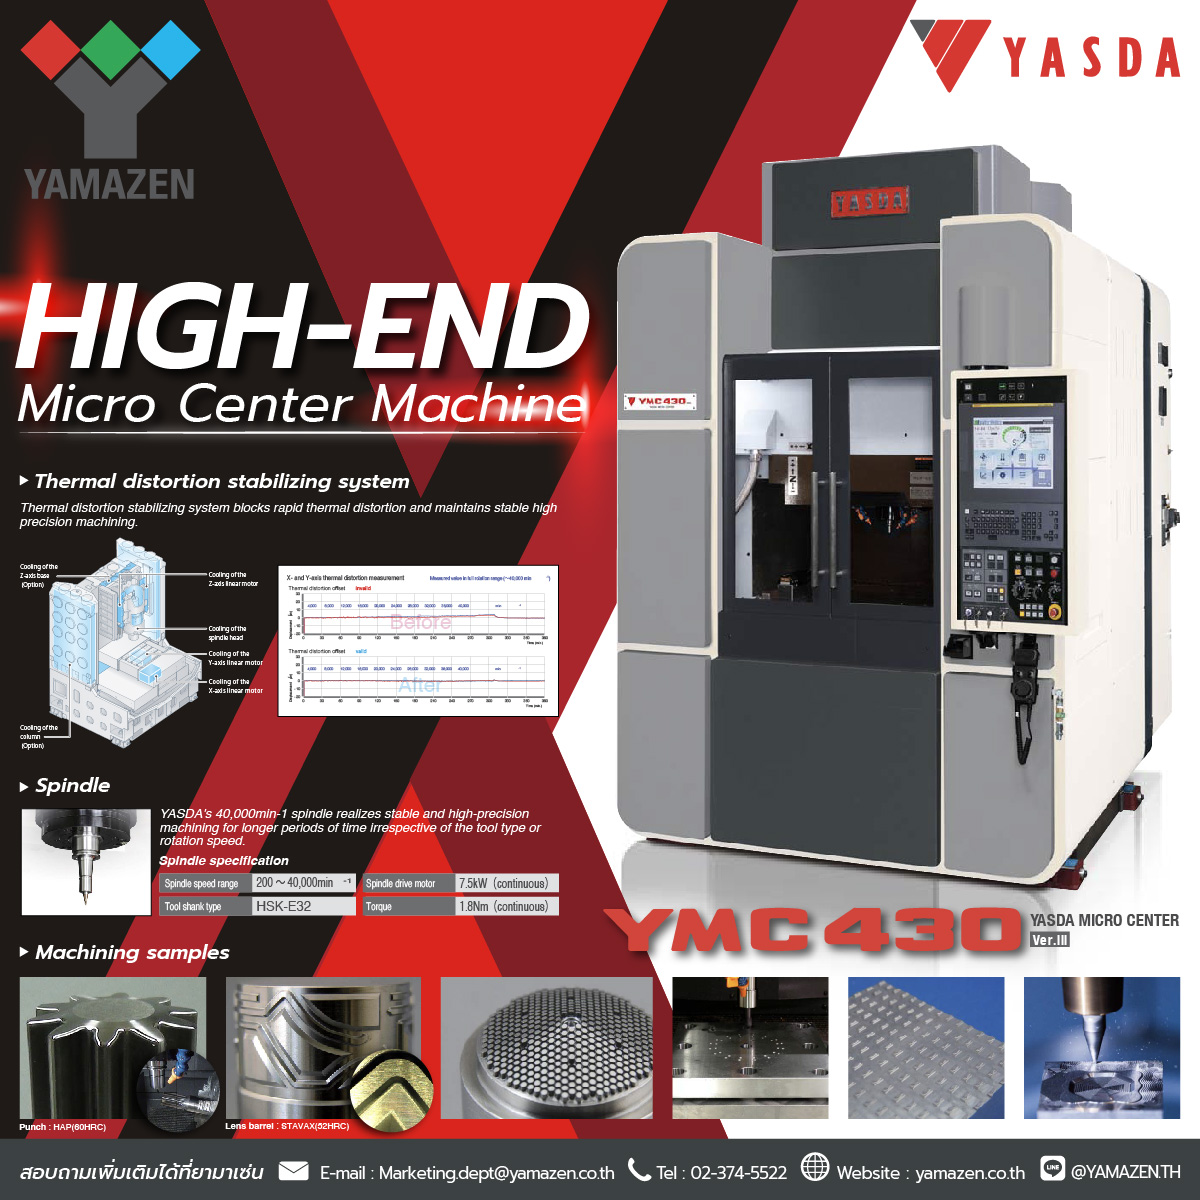 เครื่องกลึง CNC 3 แกน Micro Center YMC430 YASDA 